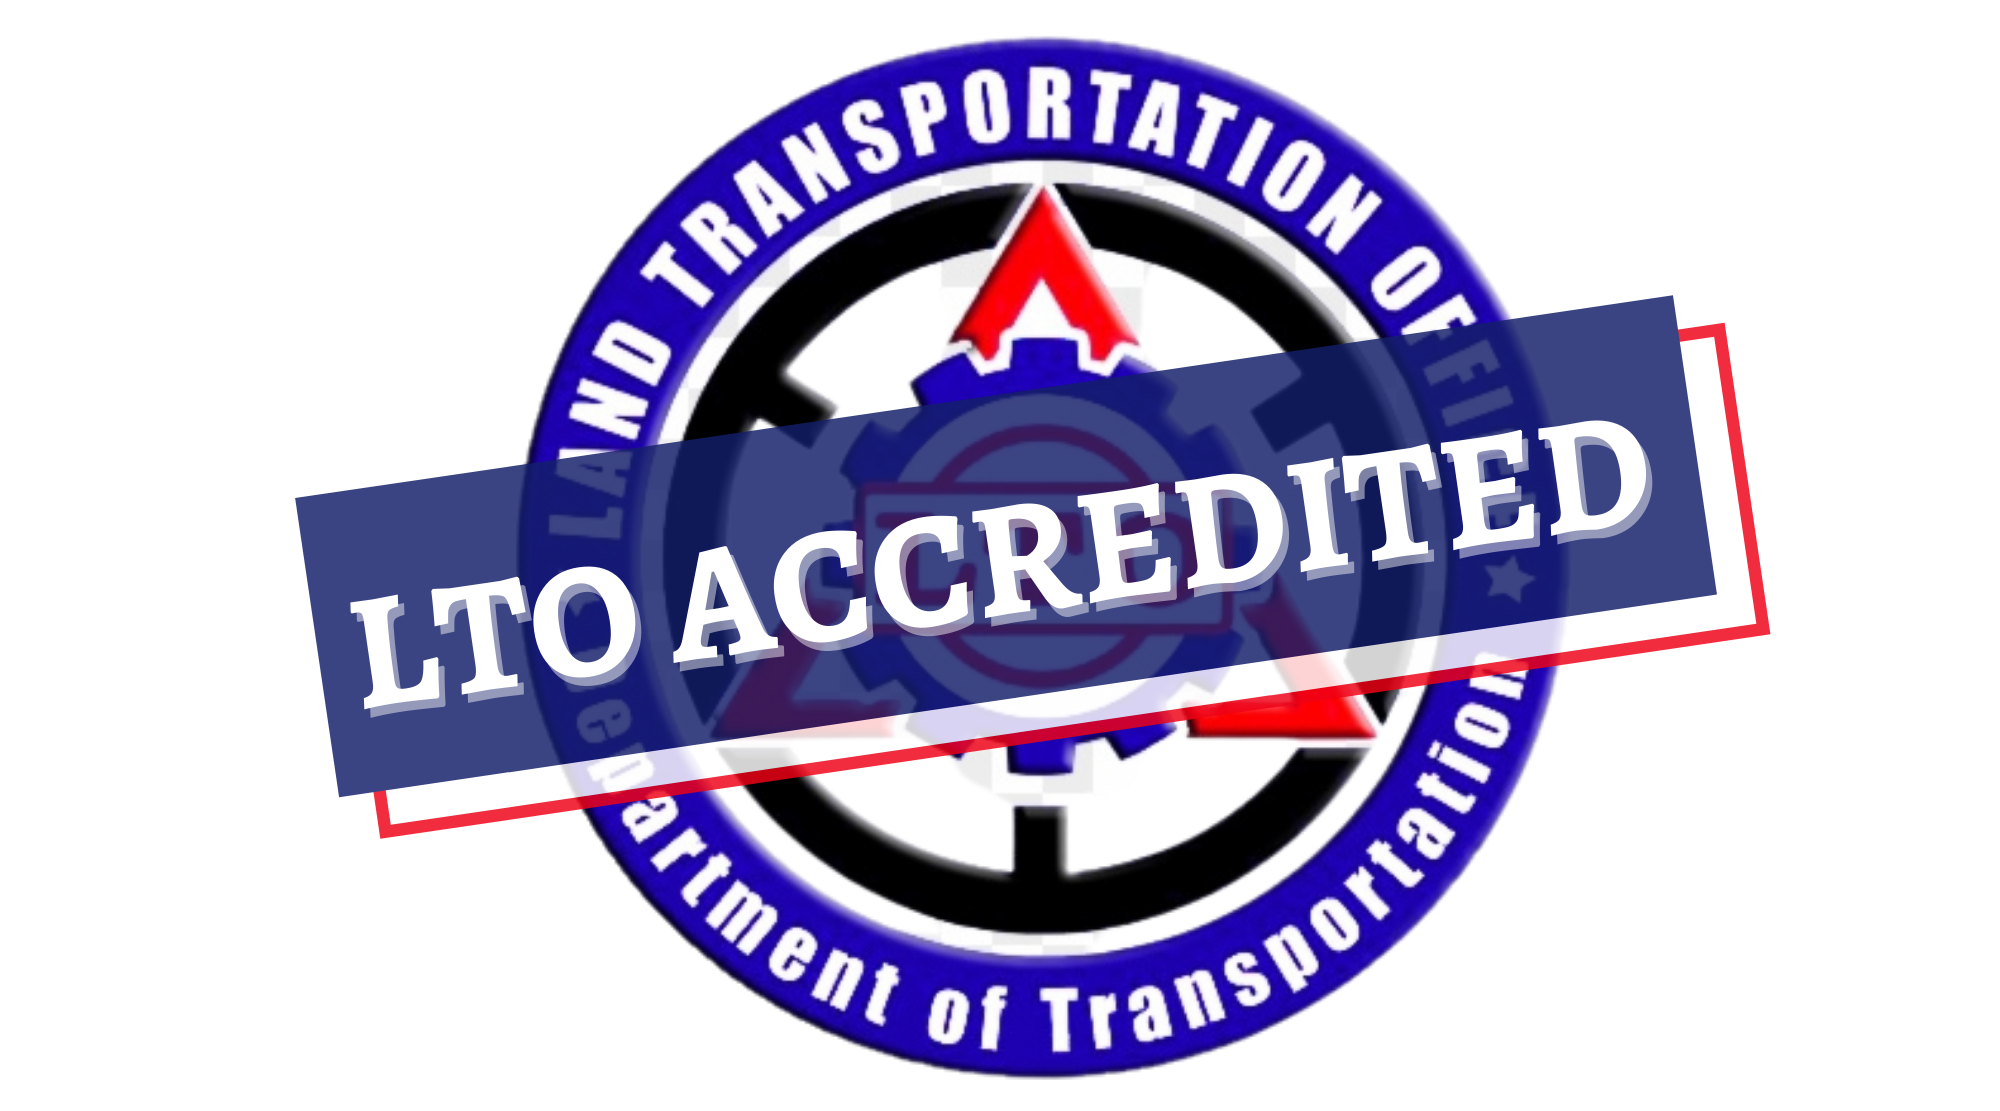 LTO accredited